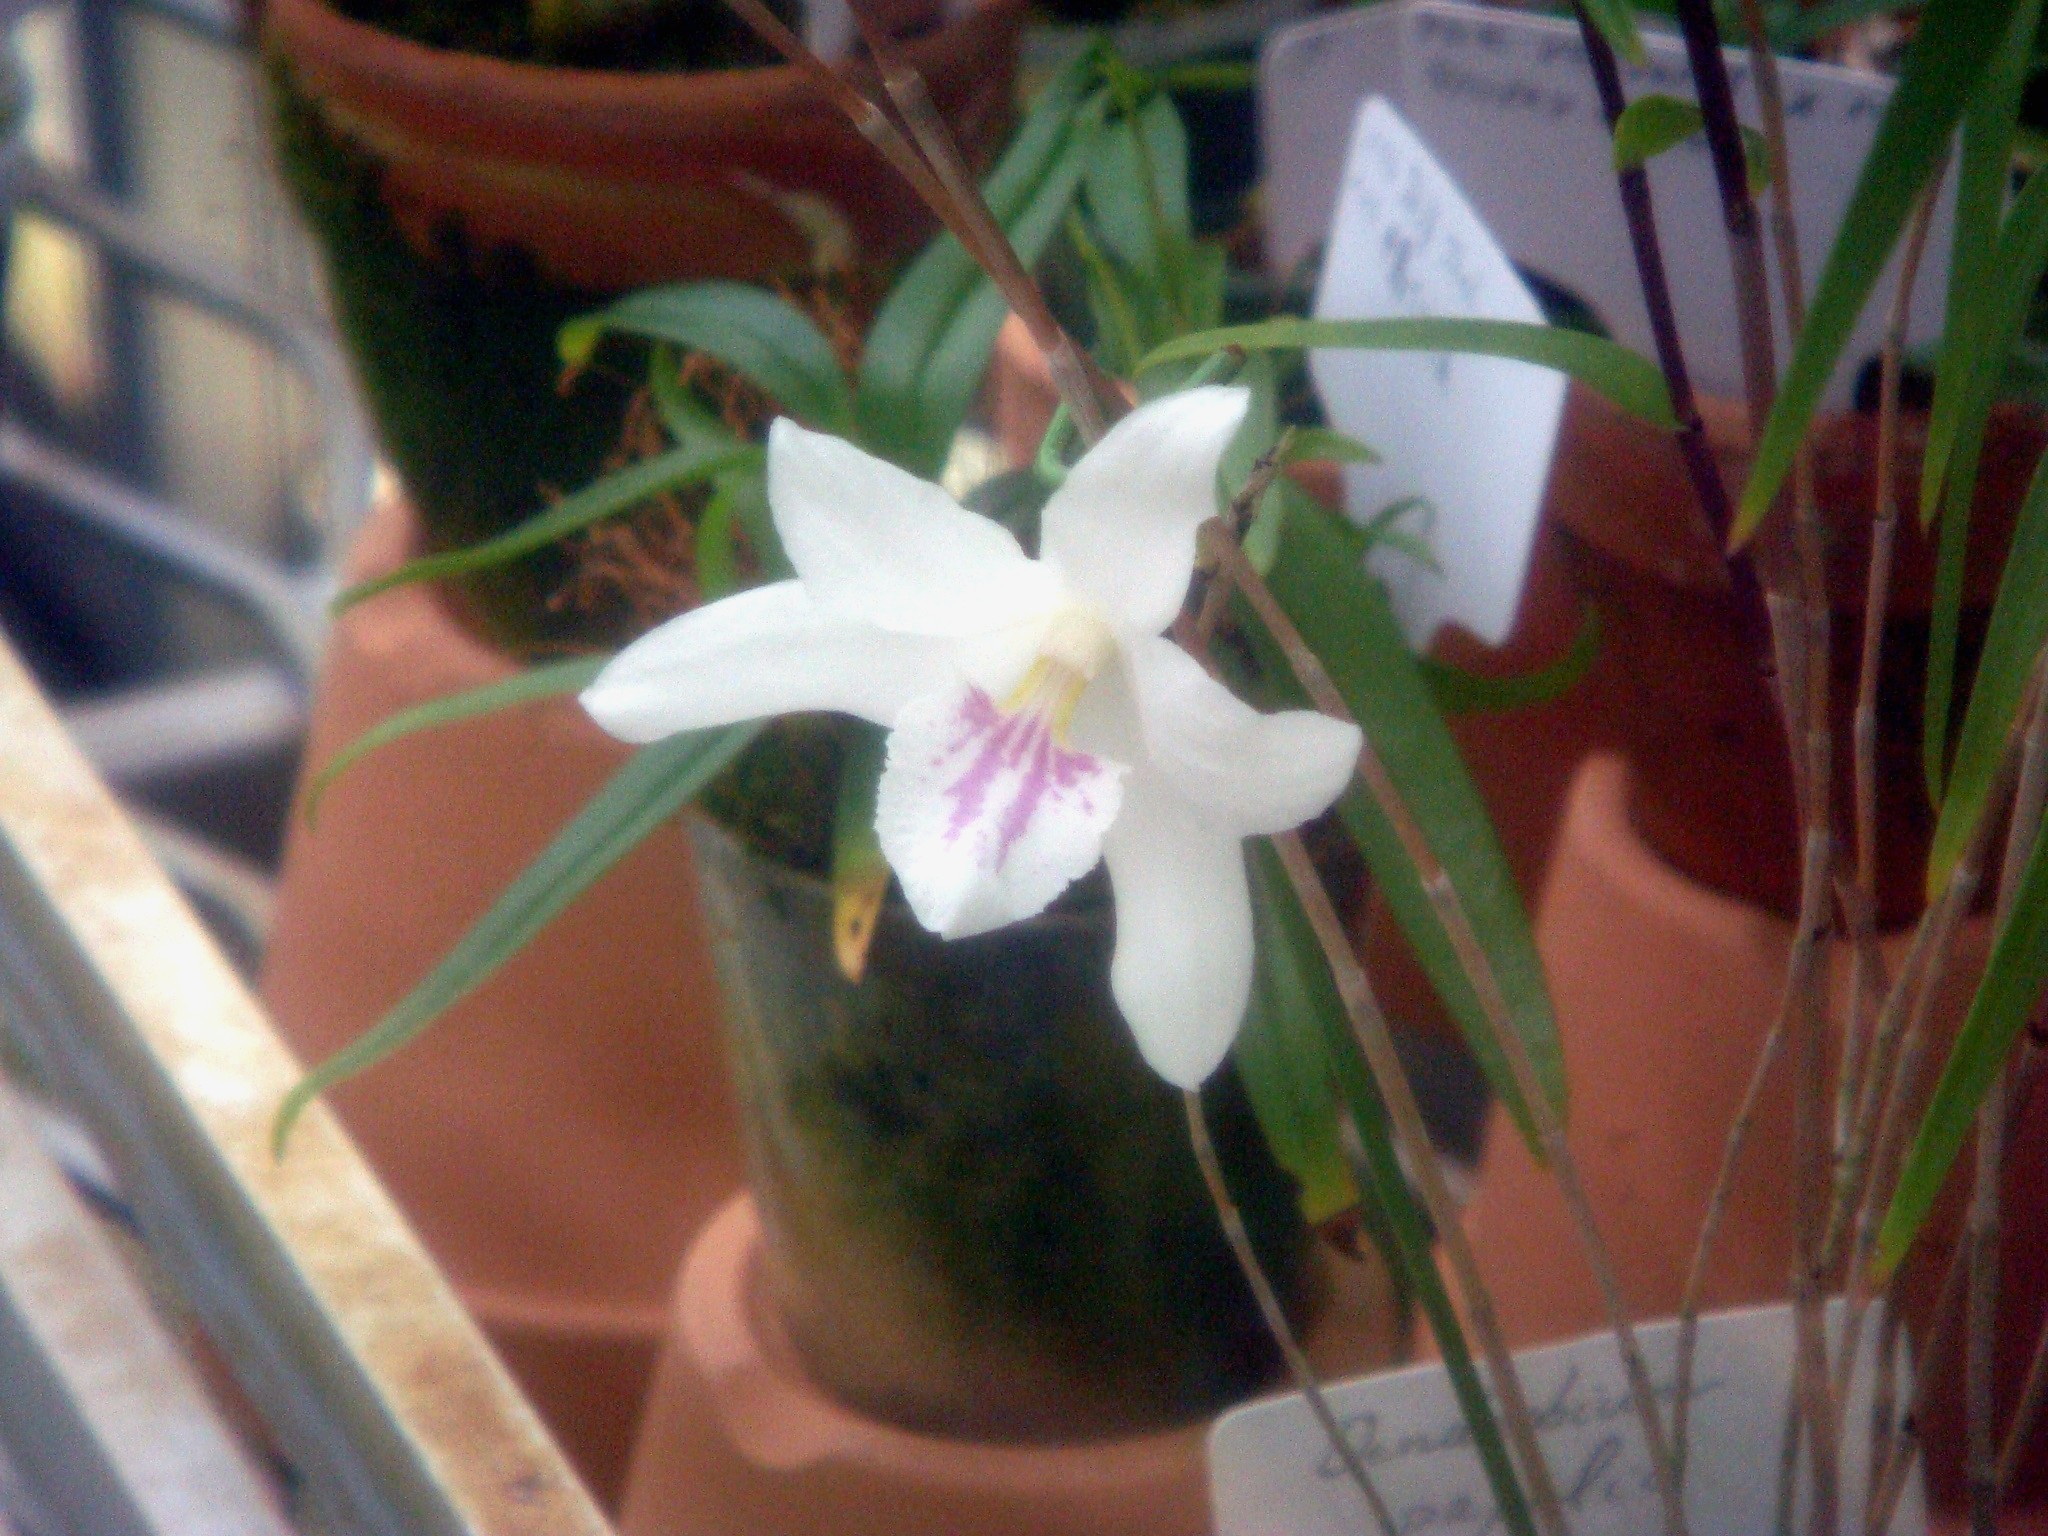 http://orchids.la.coocan.jp/Dendrobium/Dendrobium%20papilio/DSC07616.JPG